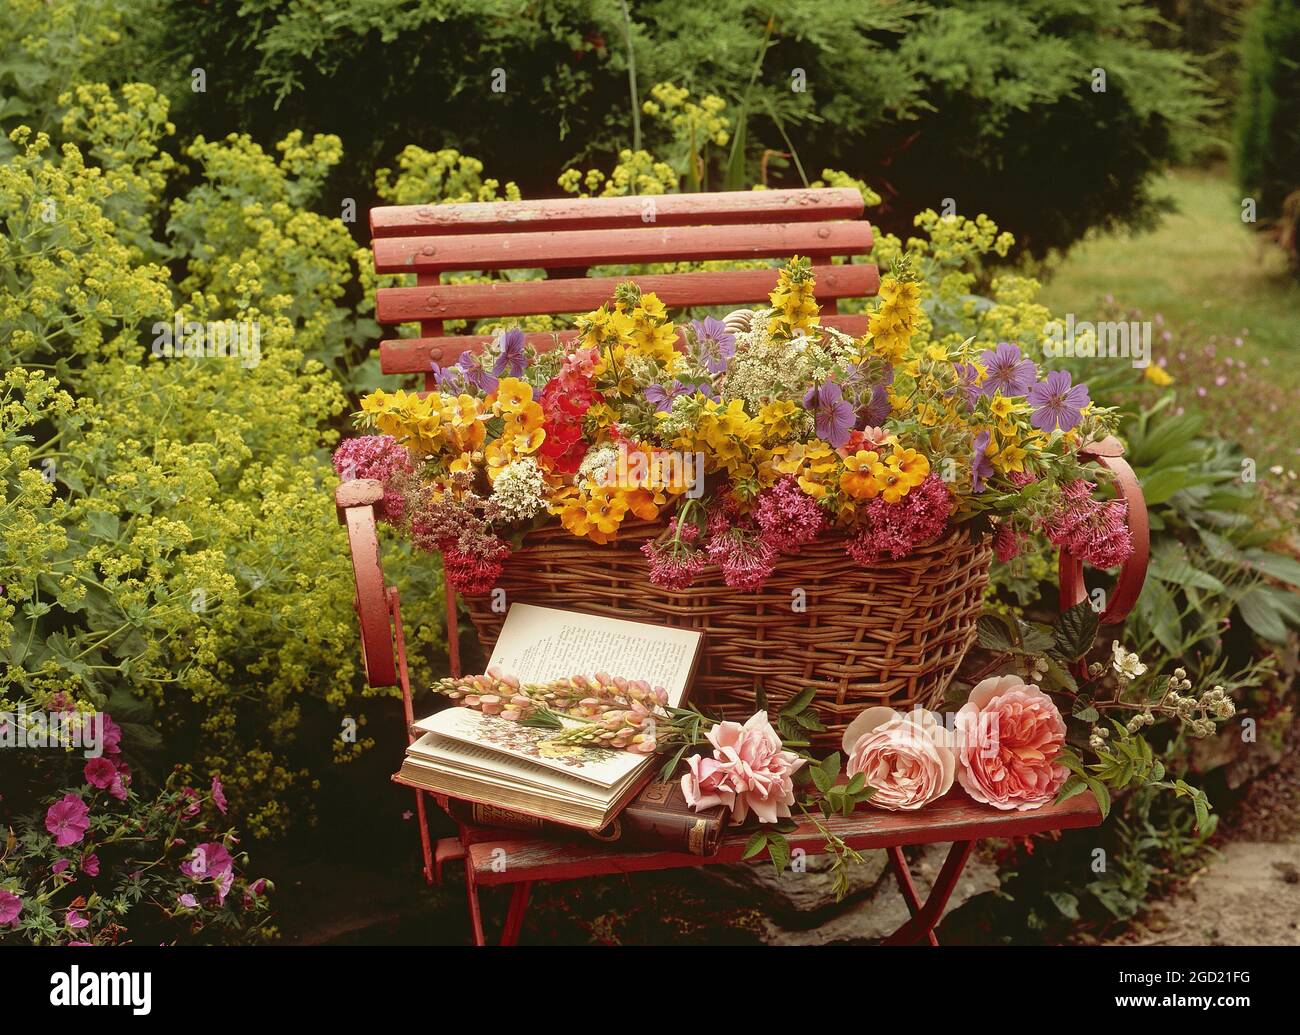 botanik, Blumen in einem Korb auf einem Stuhl im Garten, Rosen, Erysimum, Lupine, Geranium, ADDITIONAL-RIGHTS-CLEARANCE-INFO-NOT-AVAILABLE Stockfoto